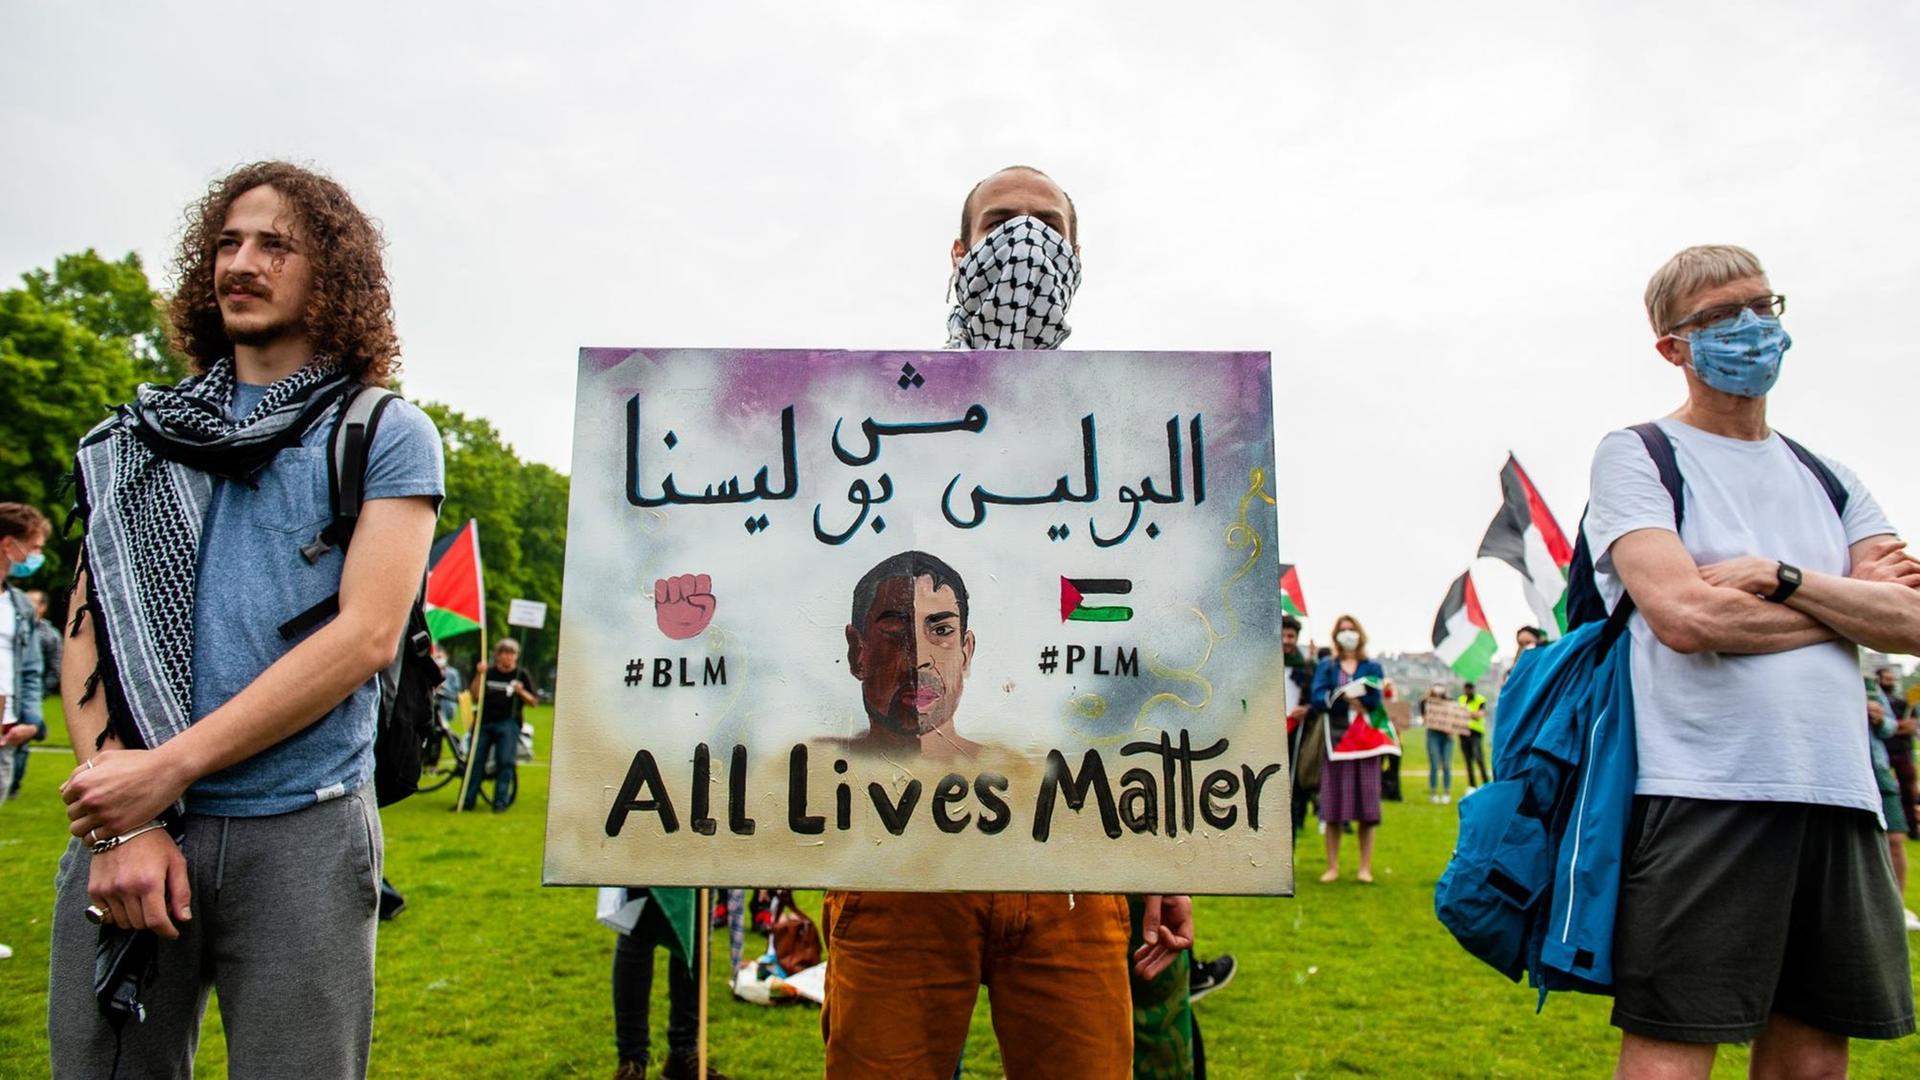 Ein Demonstrant hält ein Schild mit der Aufschrift: "#BLM #PLM All Lives Matter".